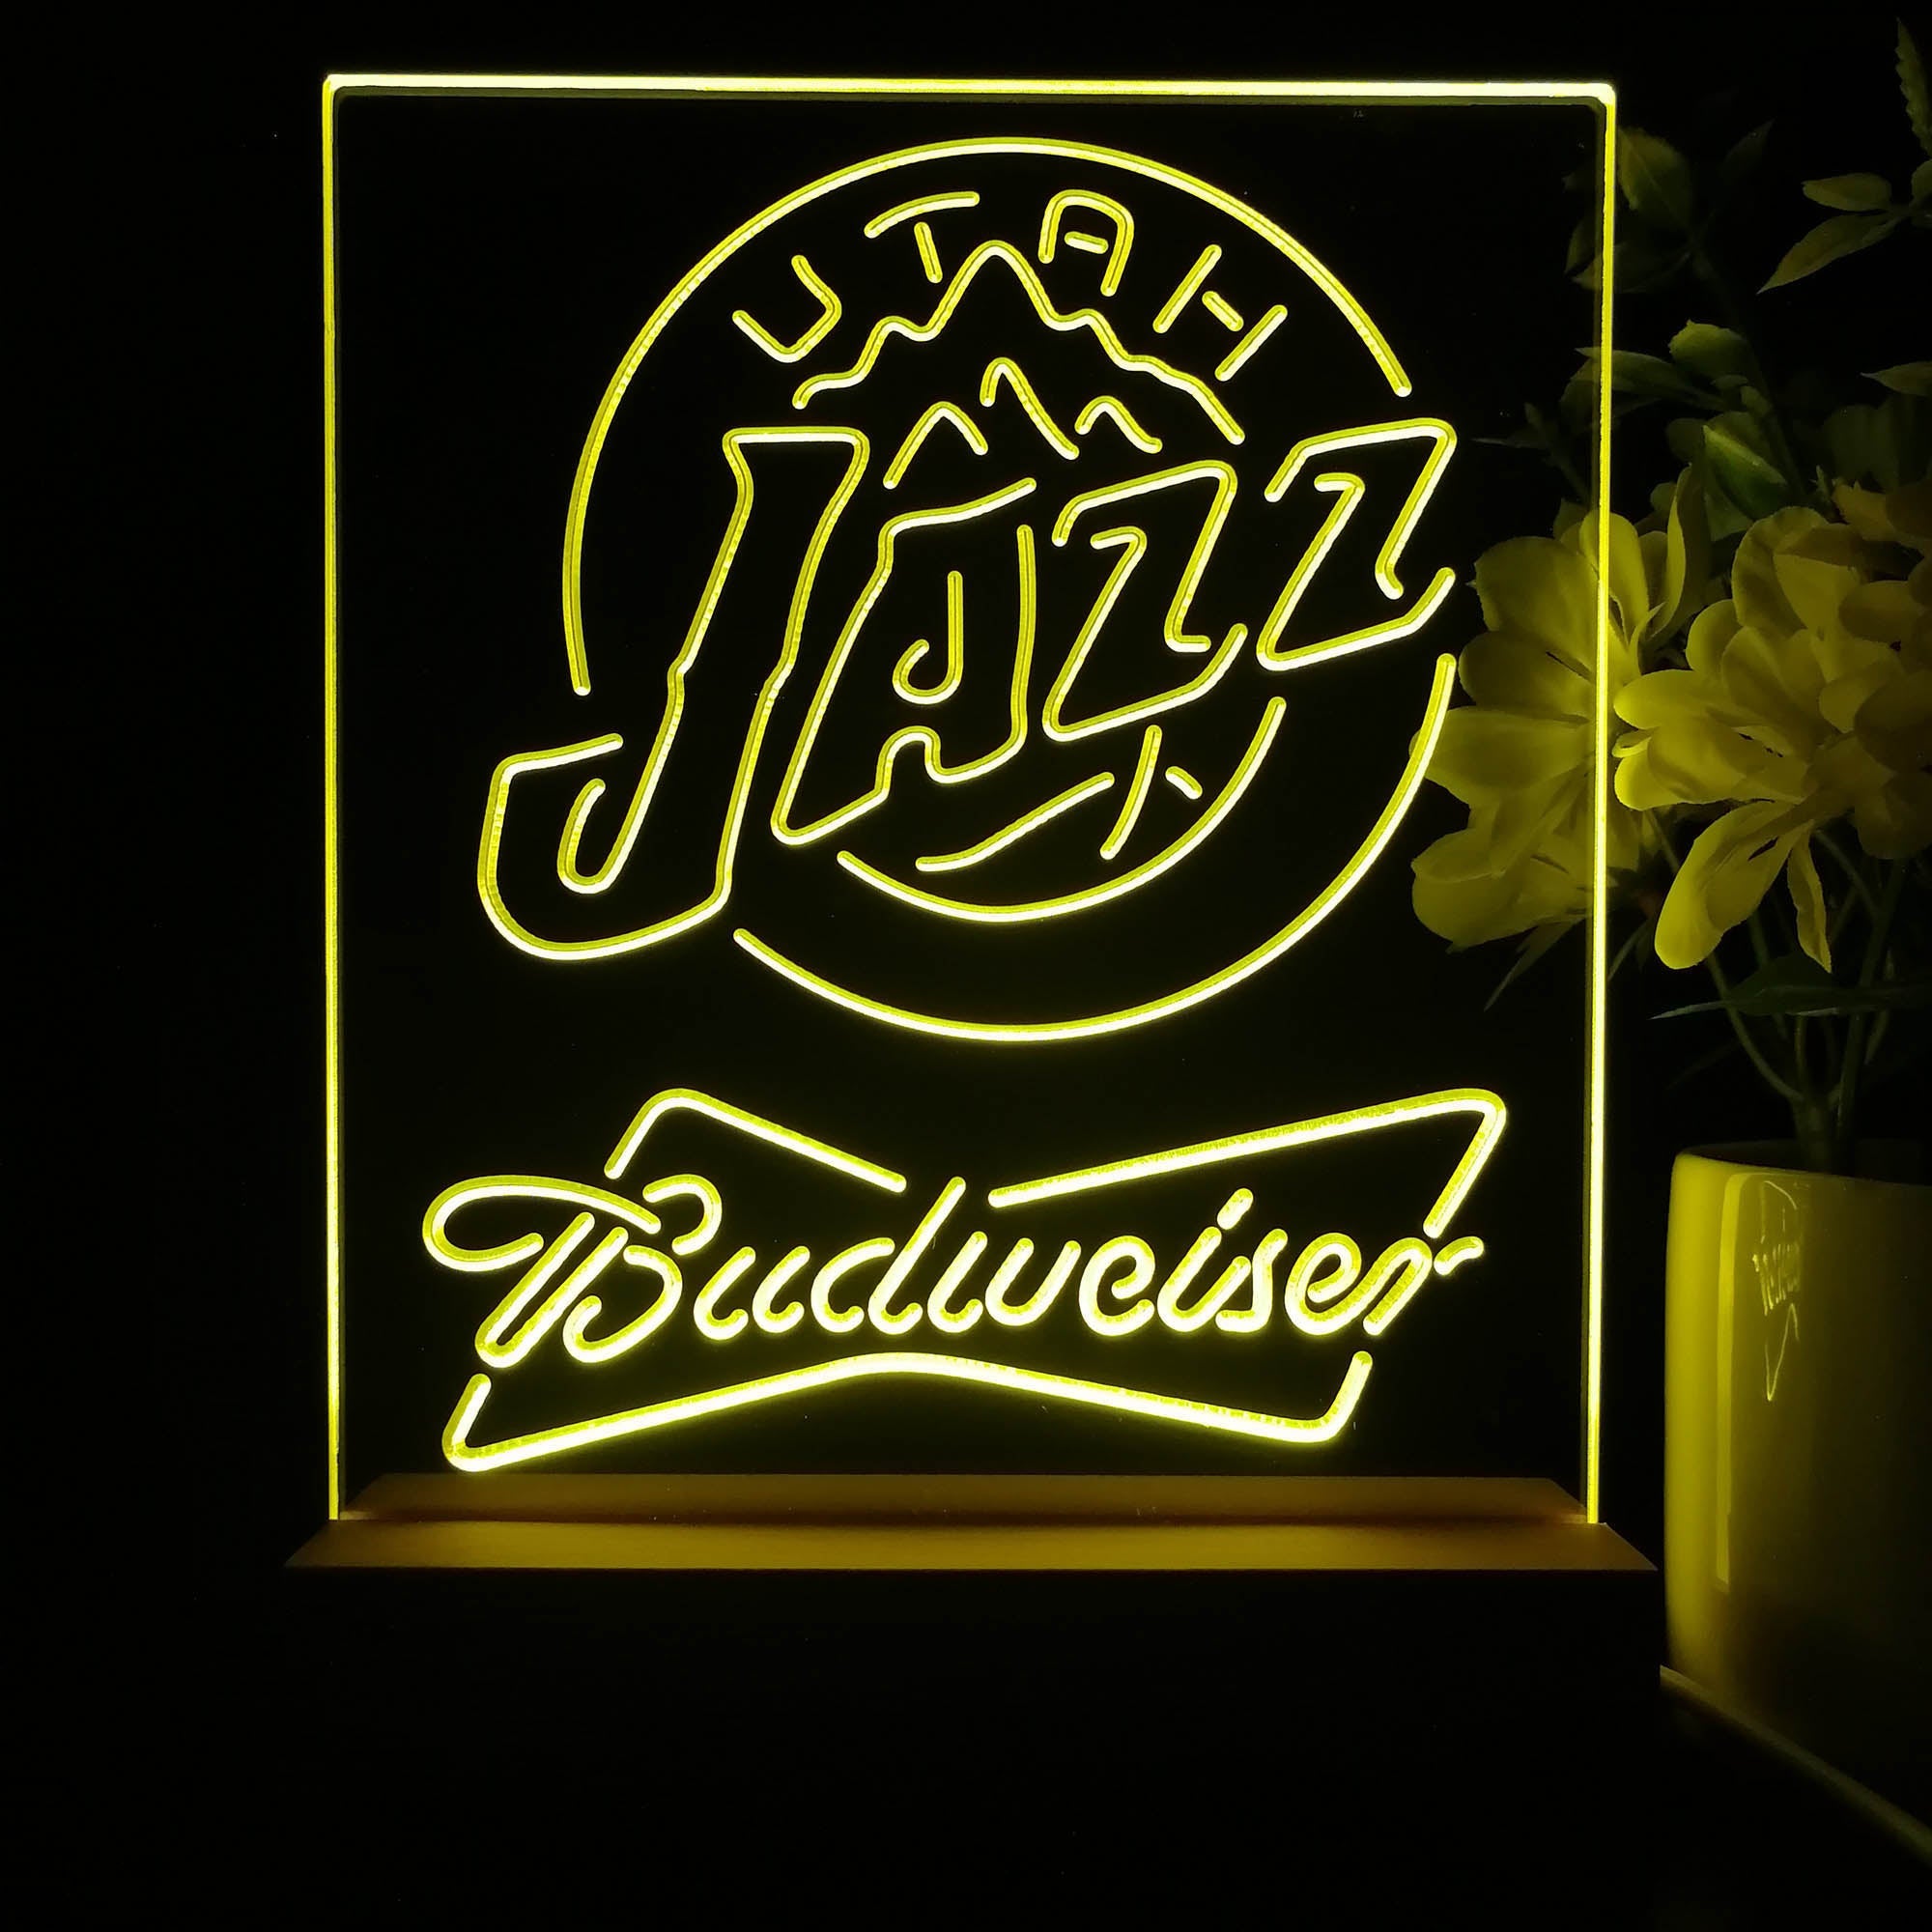 Utah Jazz Budweiser Neon Sign Pub Bar Lamp